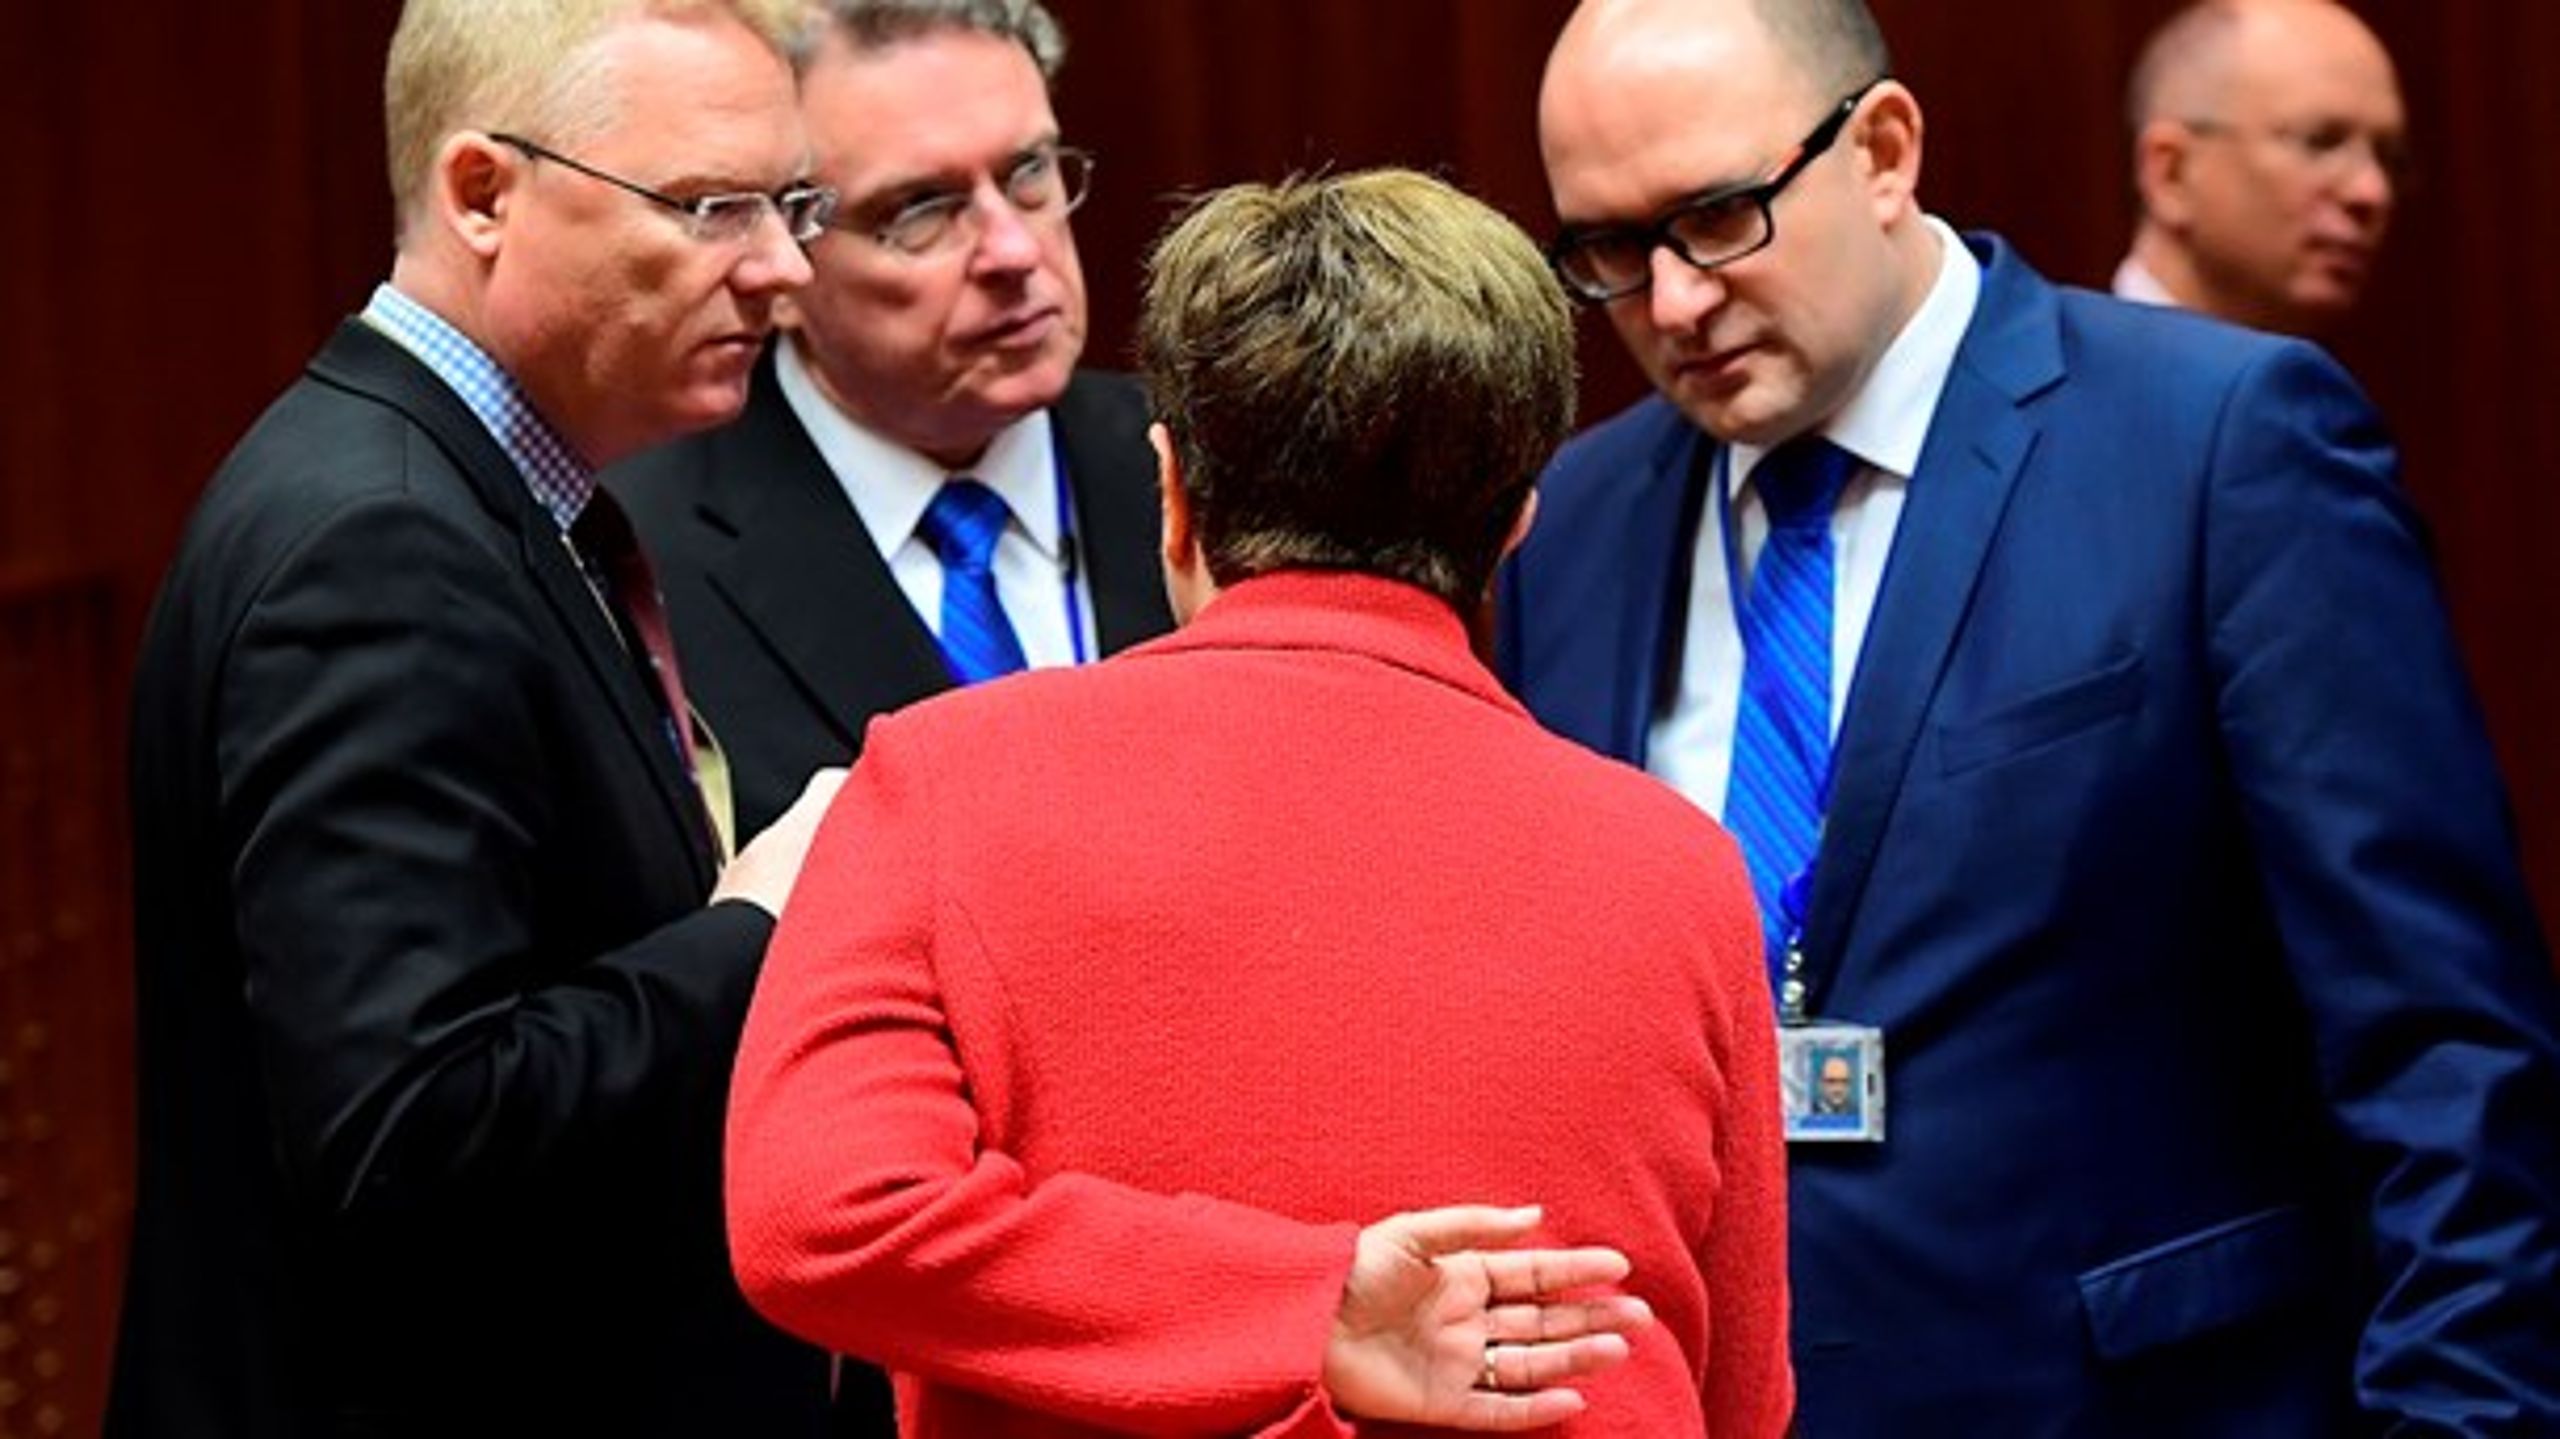 EU-landene, Europa-Parlamentet og EU's budgetkommissær Kristalina Georgieva forhandlede i 18 timer, inden et kompromis om EU's finanser for 2017 kom på plads.